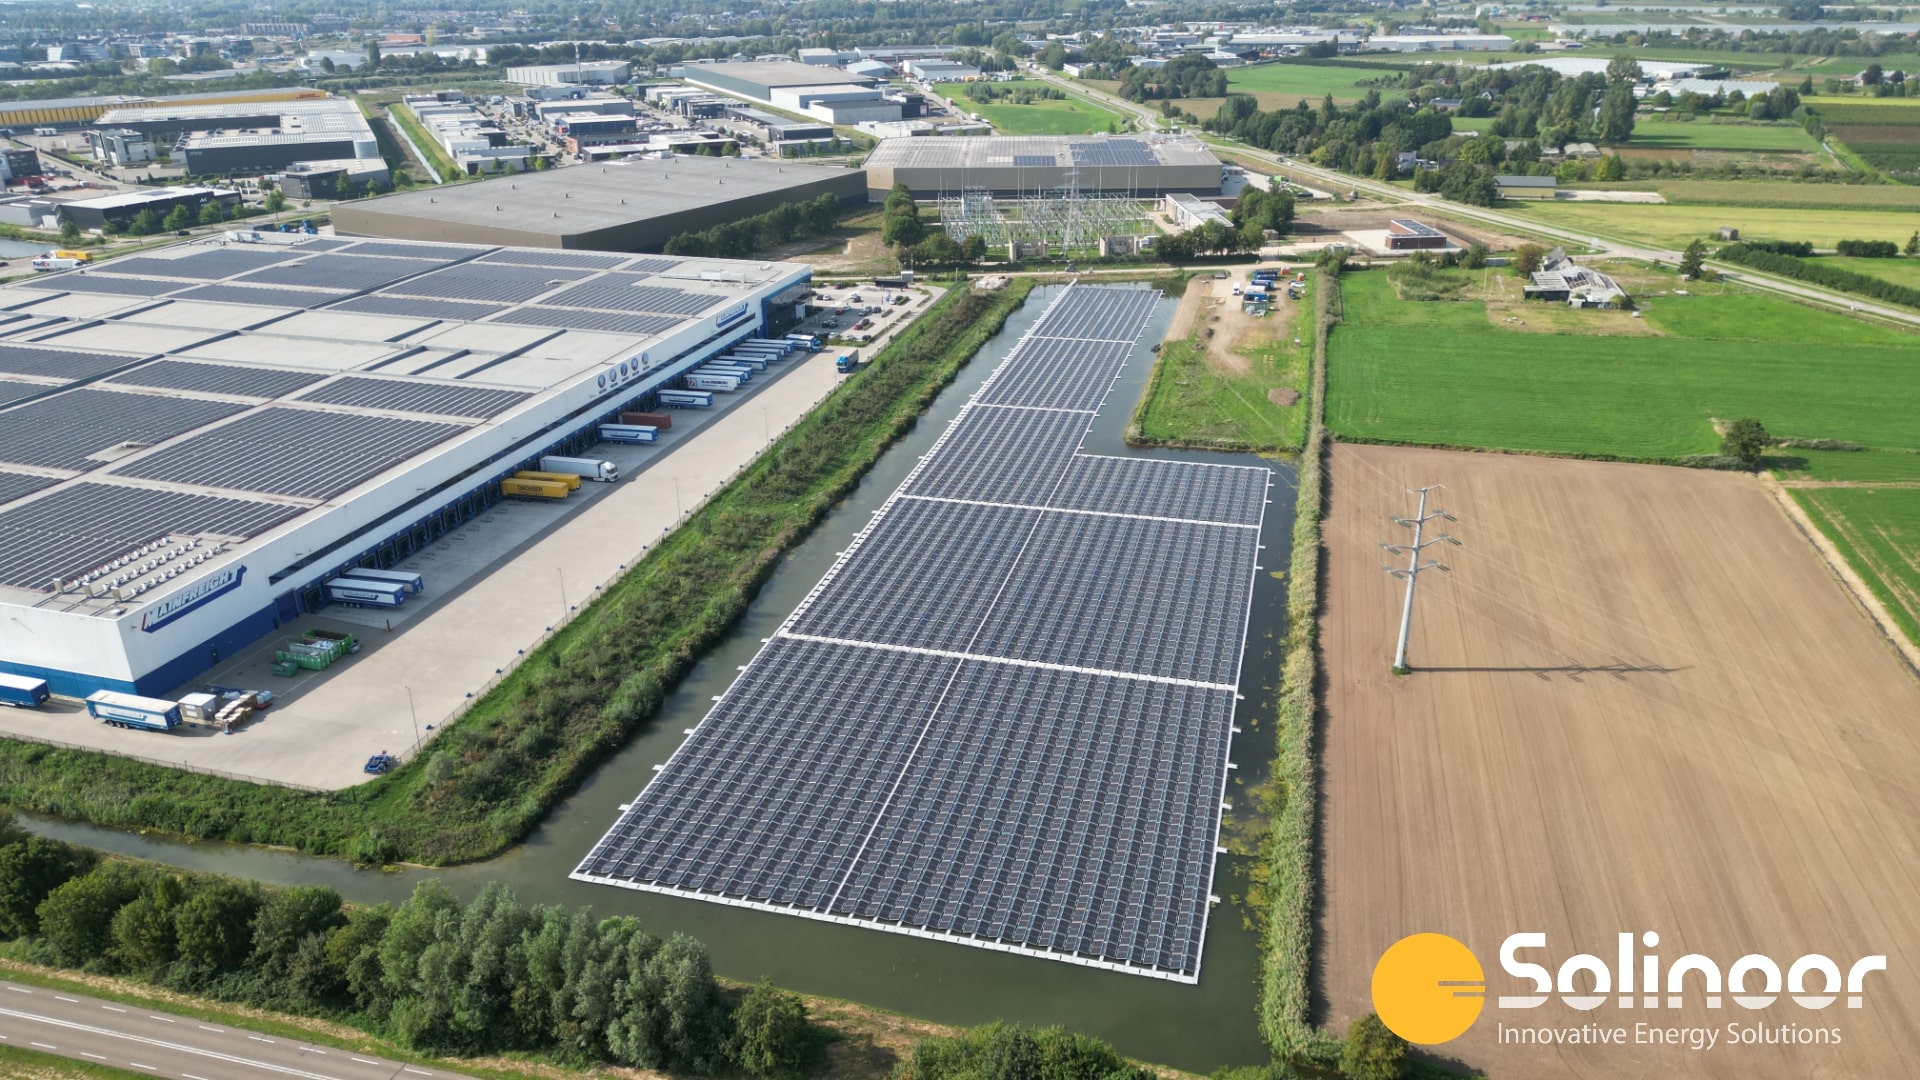 Bovenaanzicht zonnepark Zaltbommel in Gelderland compleet - Solinoor innovatieve energie projecten